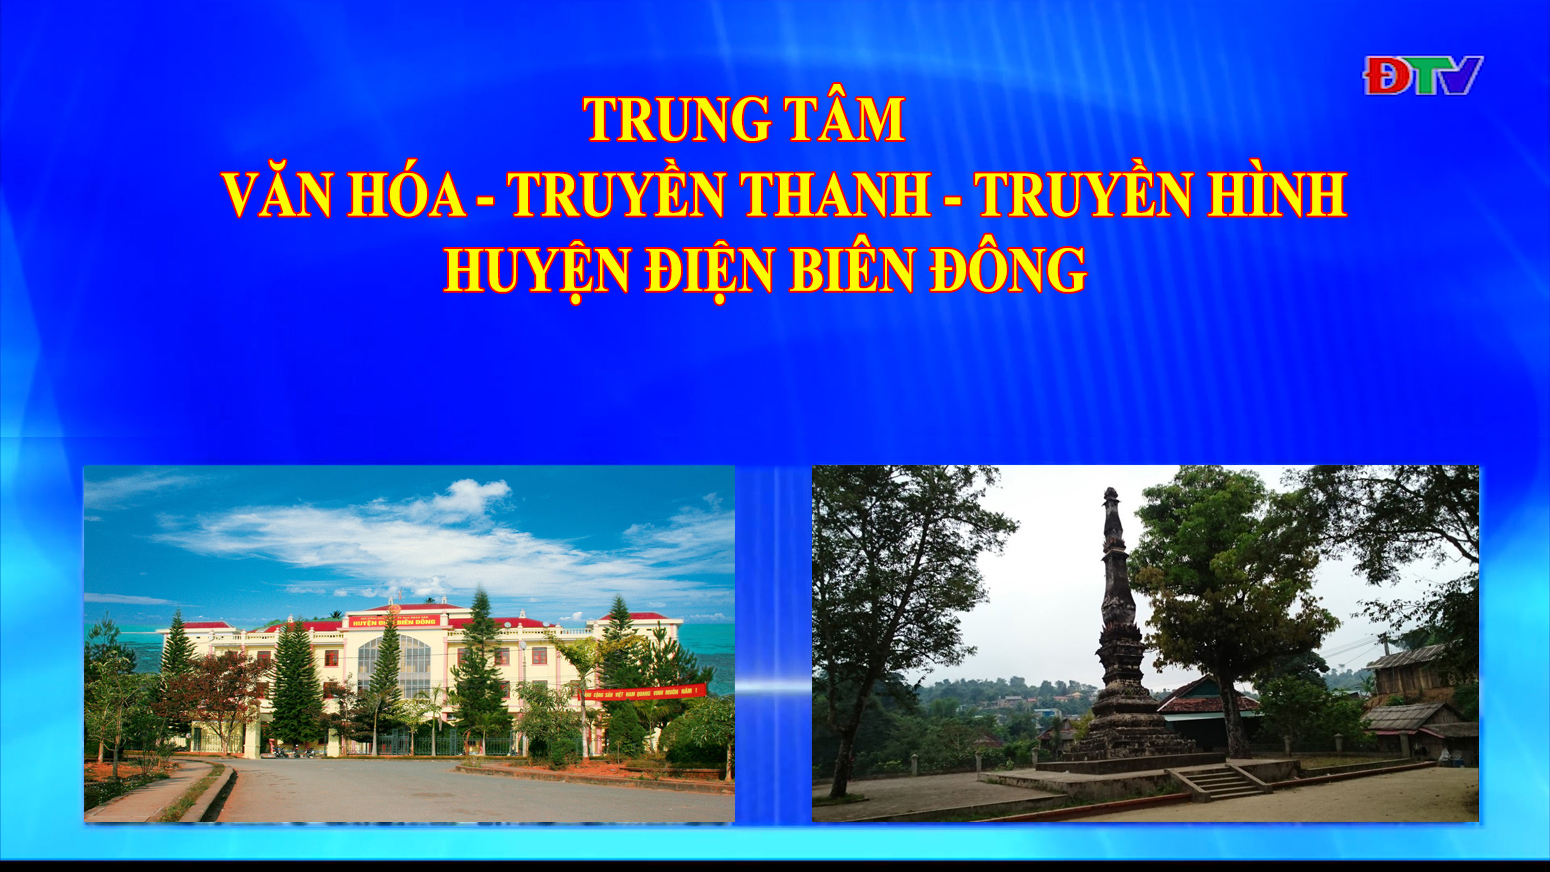 Trung tâm VH-TTTH huyện Điện Biên Đông (Ngày 16-10-2021)